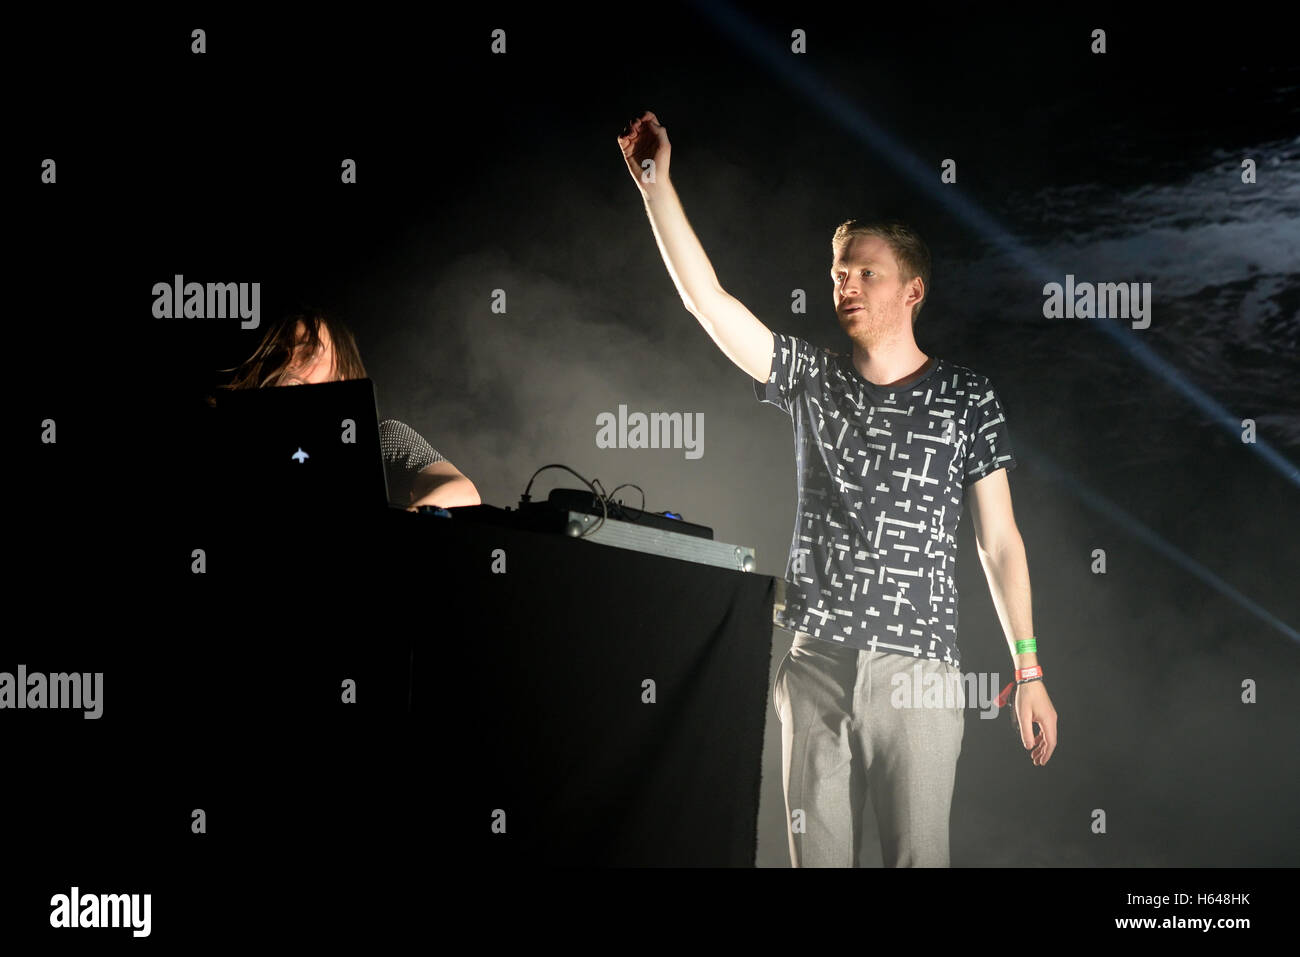 Barcellona - Jun 19: Kiasmos (minimal e techno sperimentale duo) suona al Festival Sonar. Foto Stock